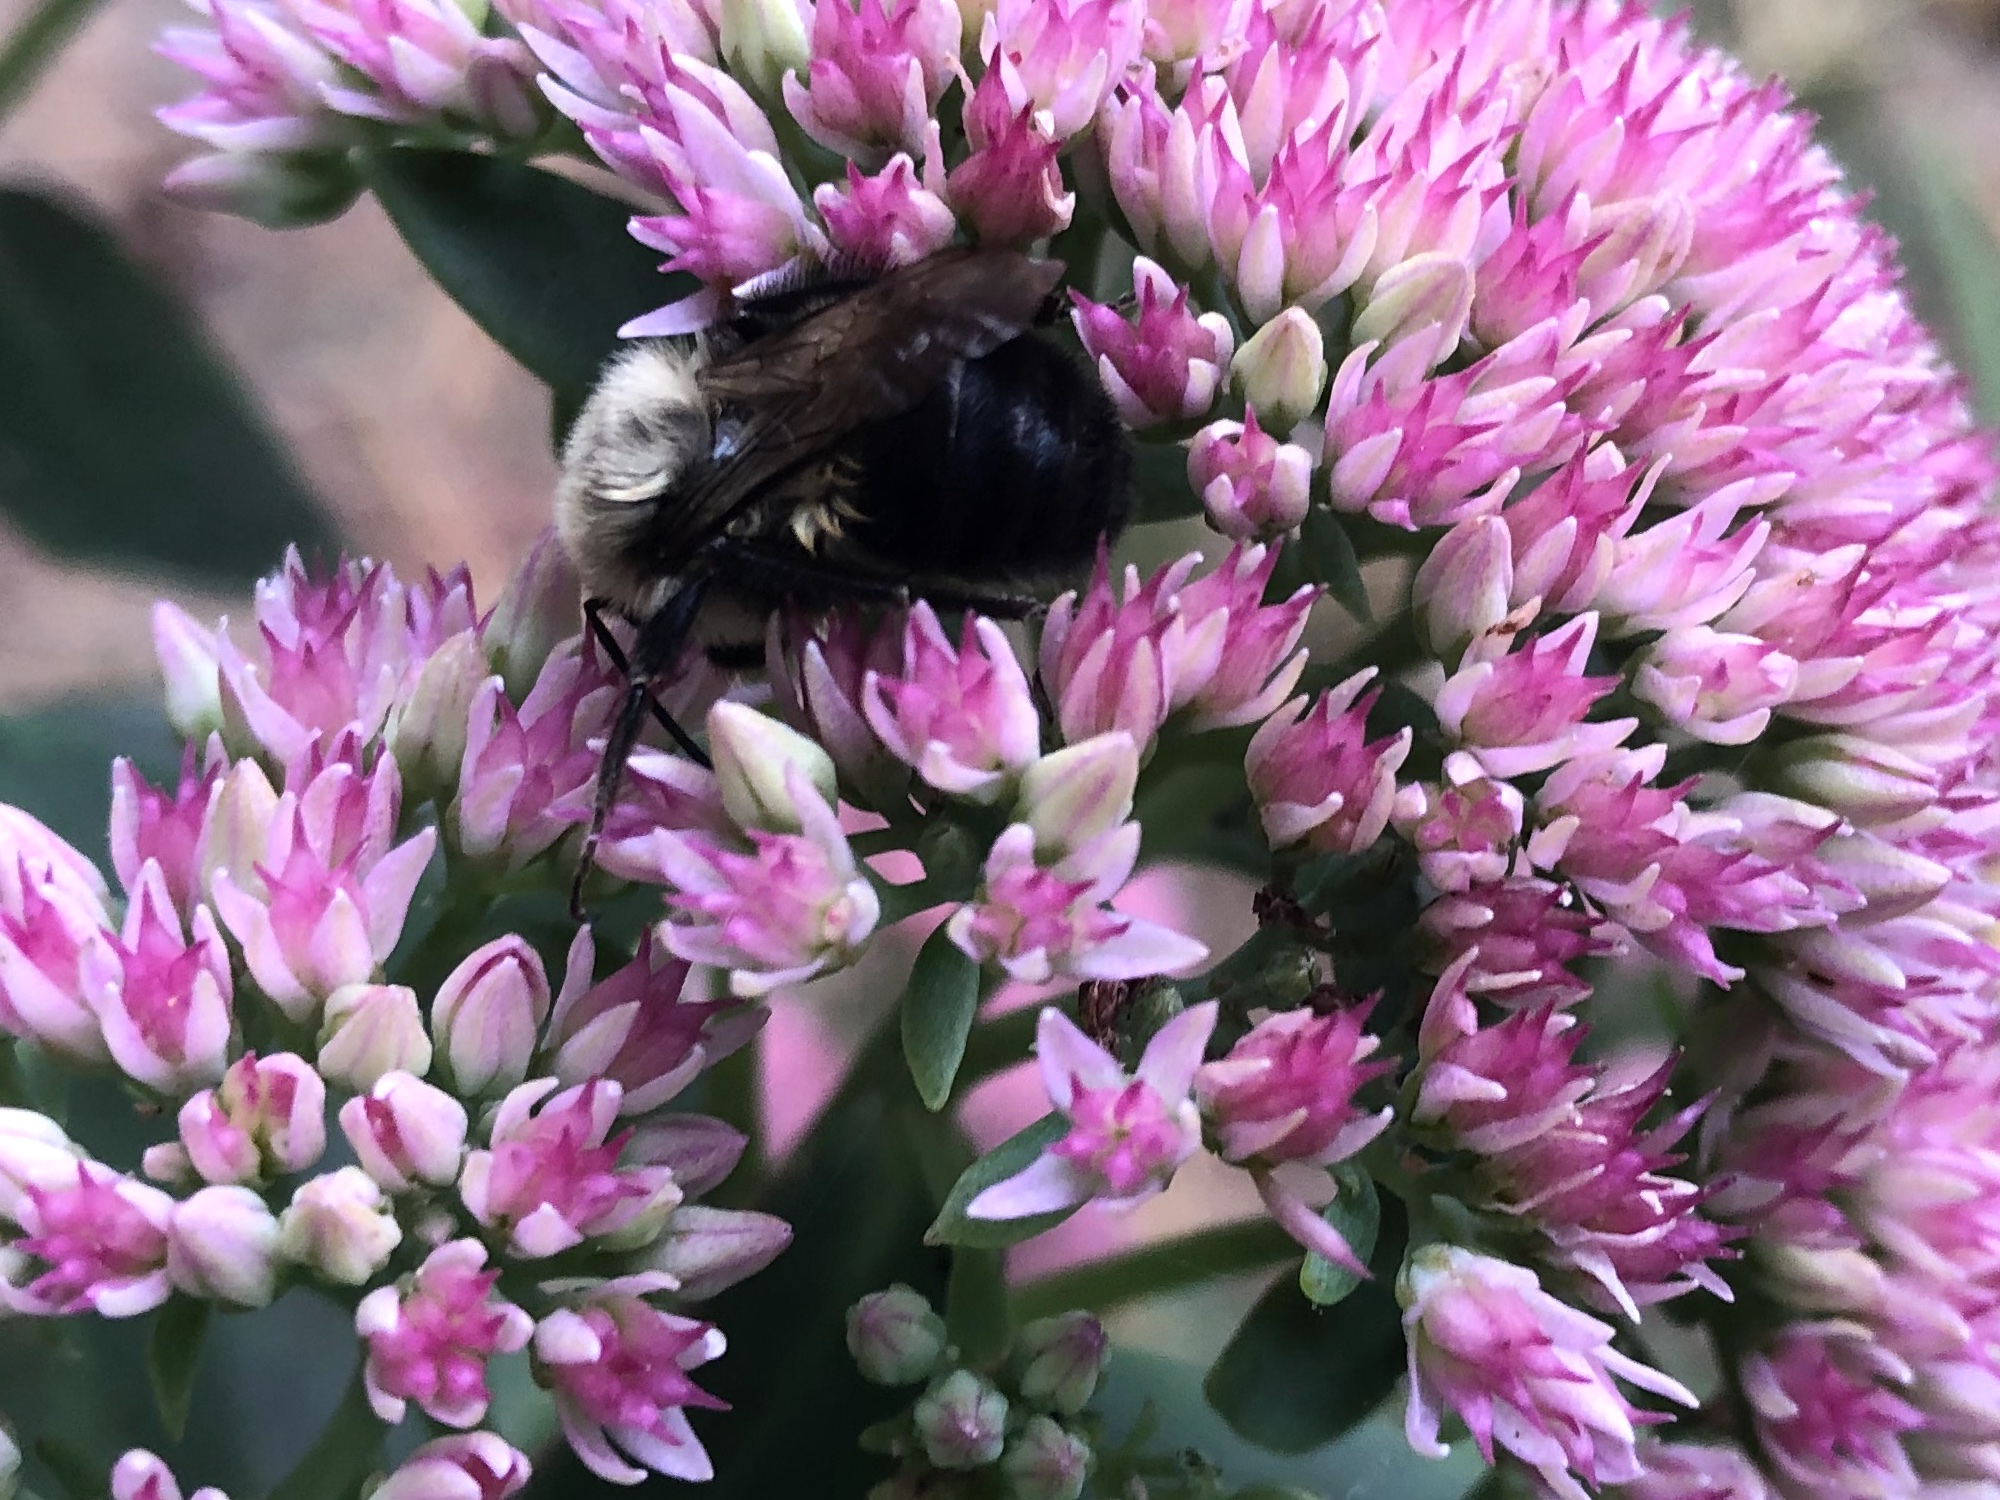 Bumblebee on Sedum on September 27, 2020.